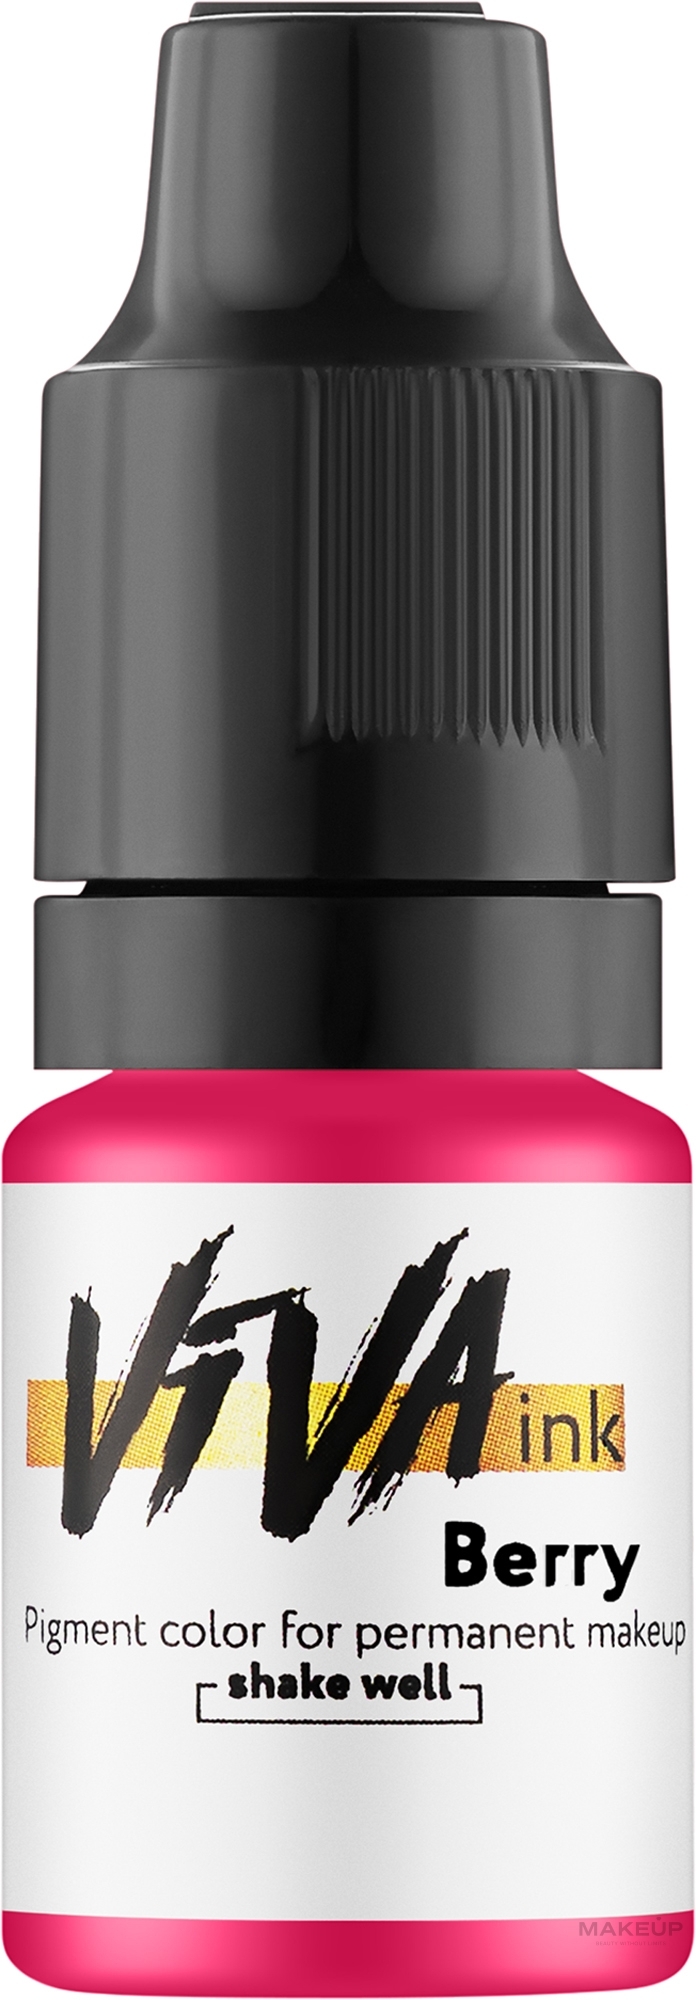 Viva ink Lips Berry - Пігмент для перманентного макіяжу губ, 6 мл — фото 6ml